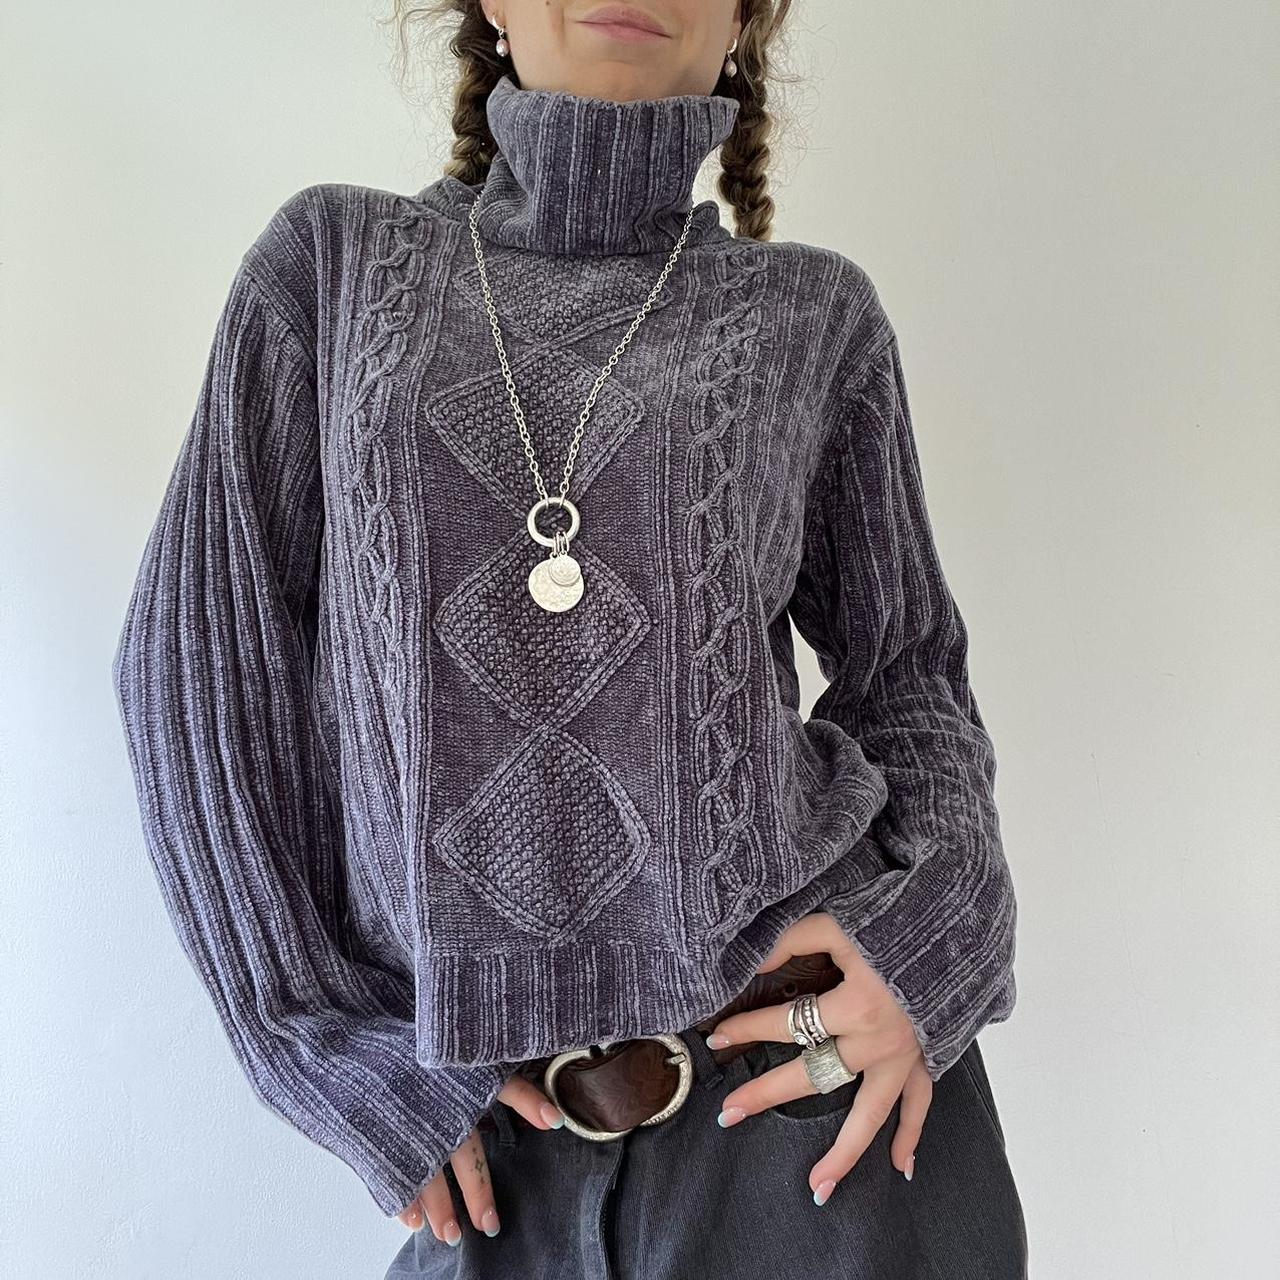 Vintage Y2k chunky knit turtleneck jumper. Will fit... - Depop